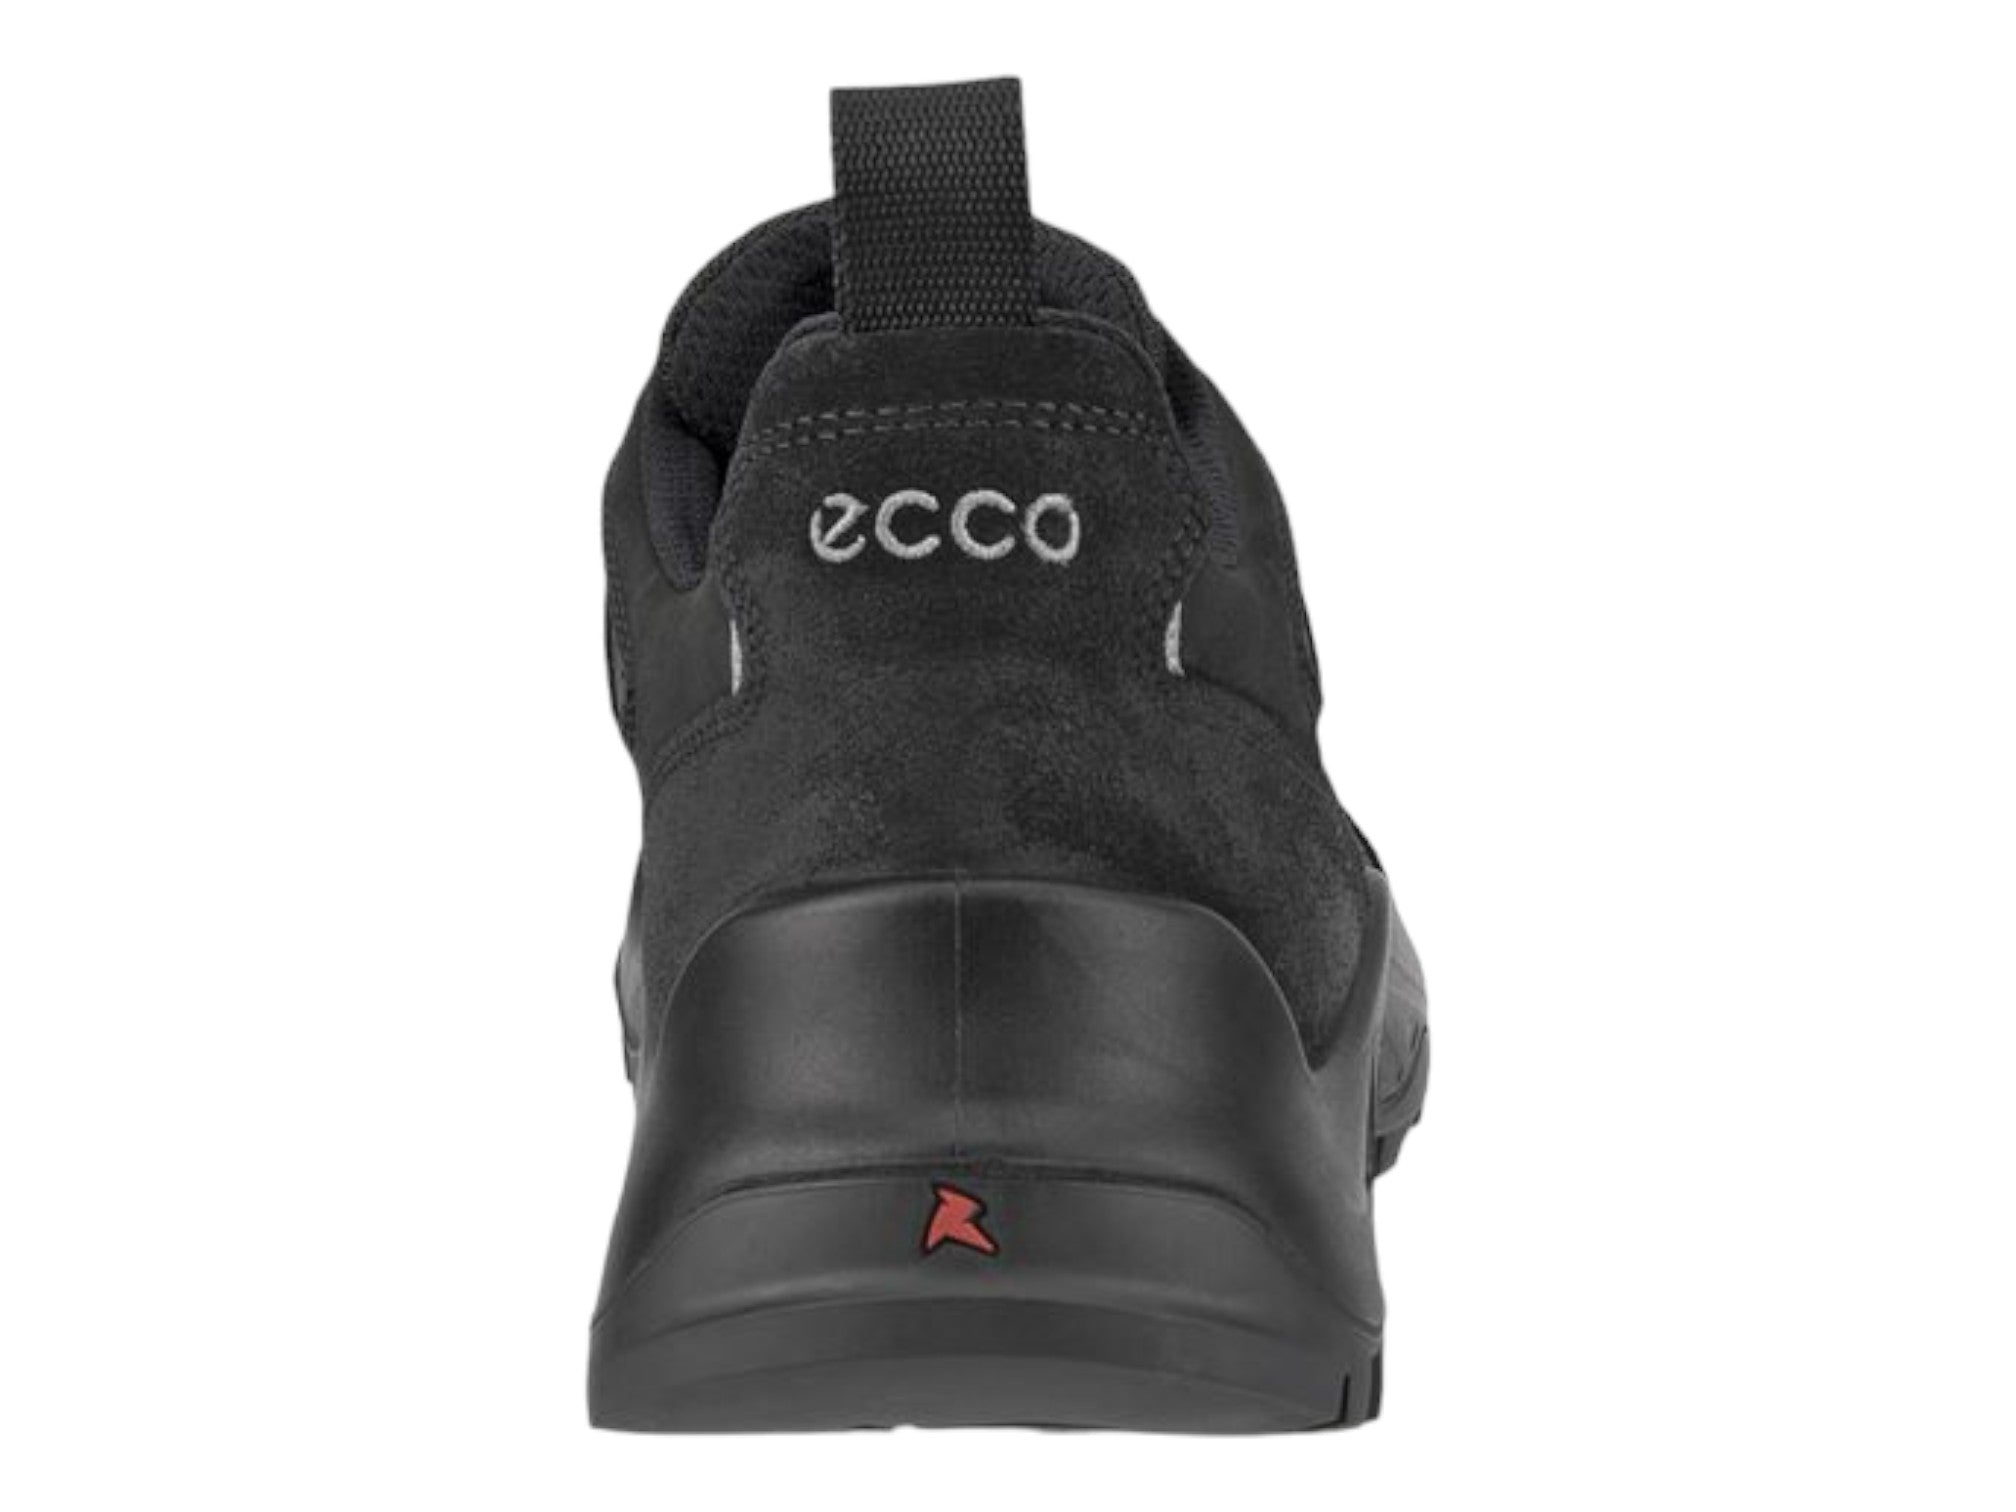 Ecco Offroad Sneaker - Men's